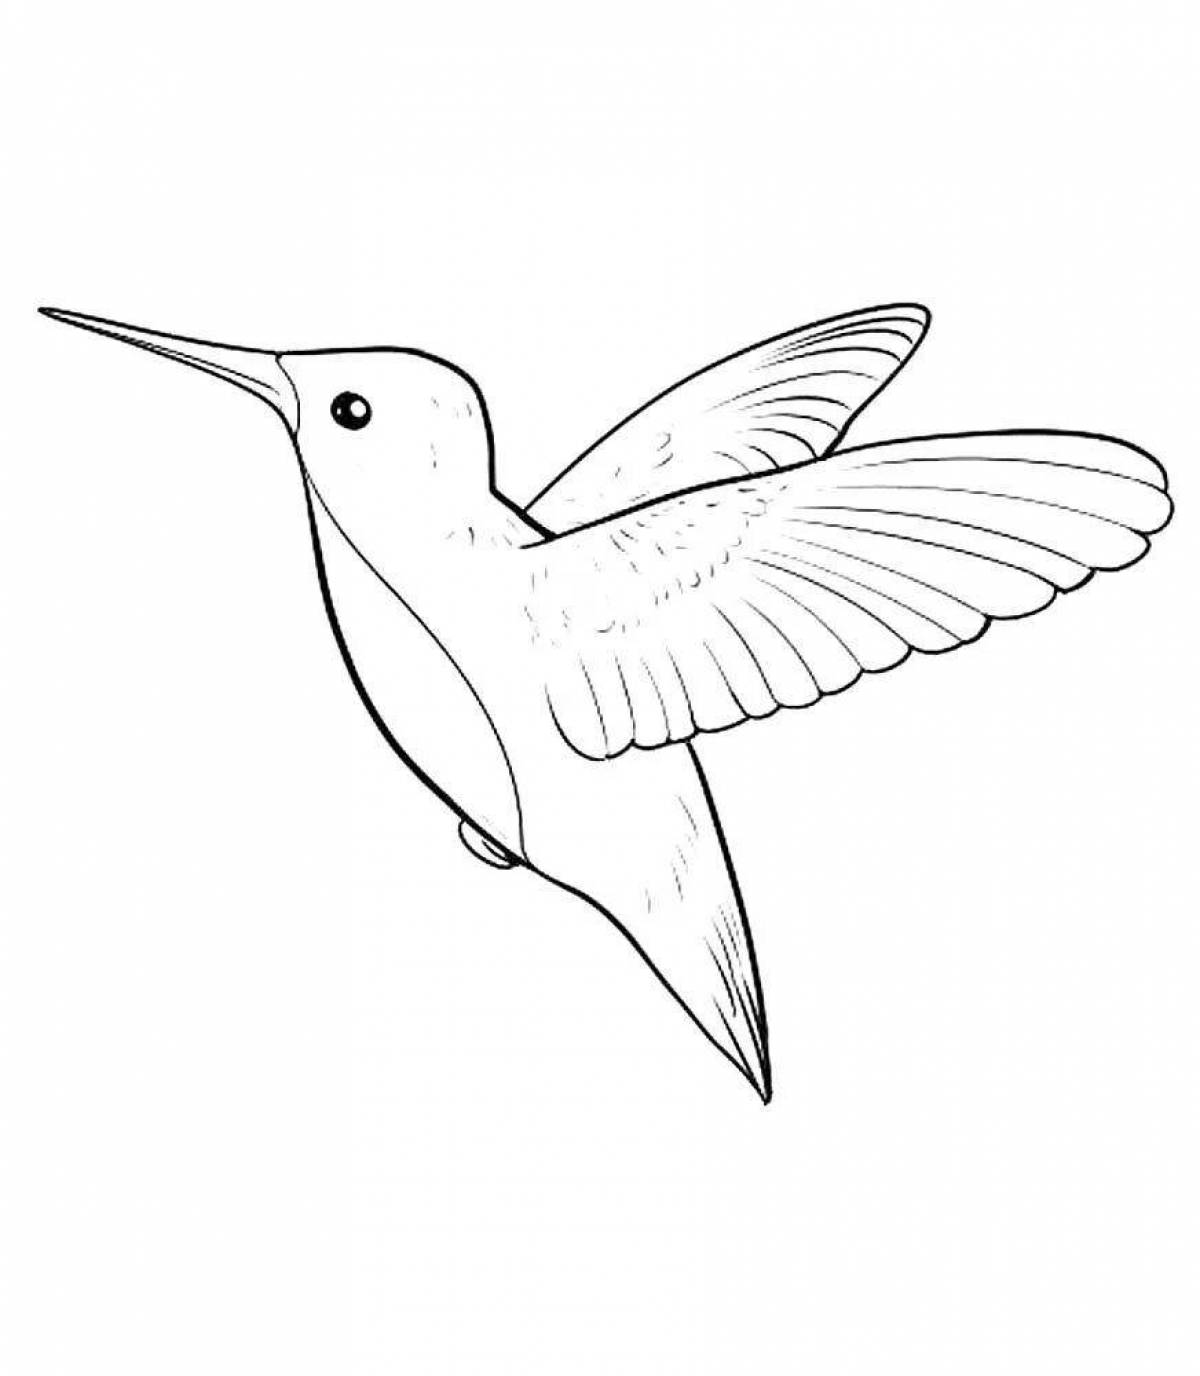 Magic hummingbird coloring book for kids